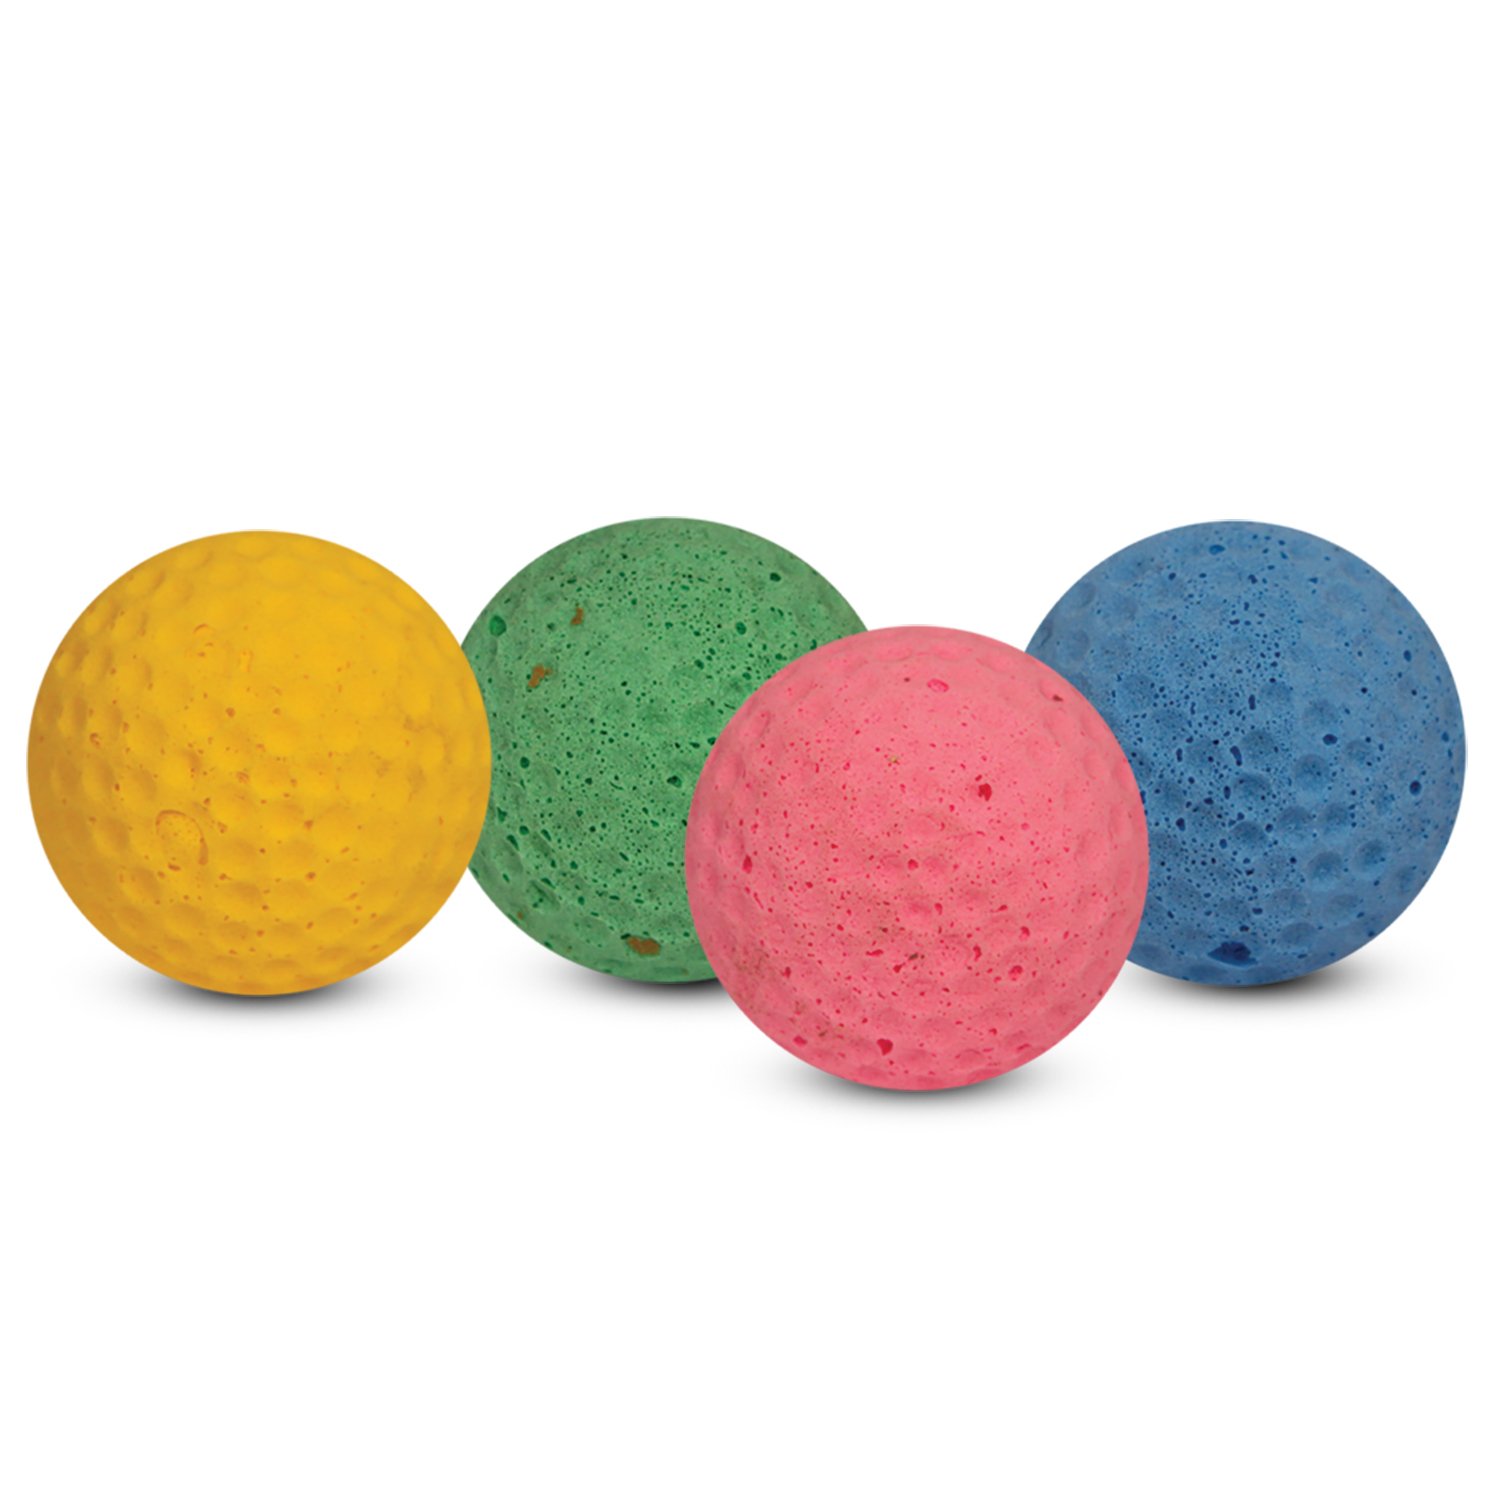 Мячик зефирный гольф 4,5 см одноцветный, Каскад